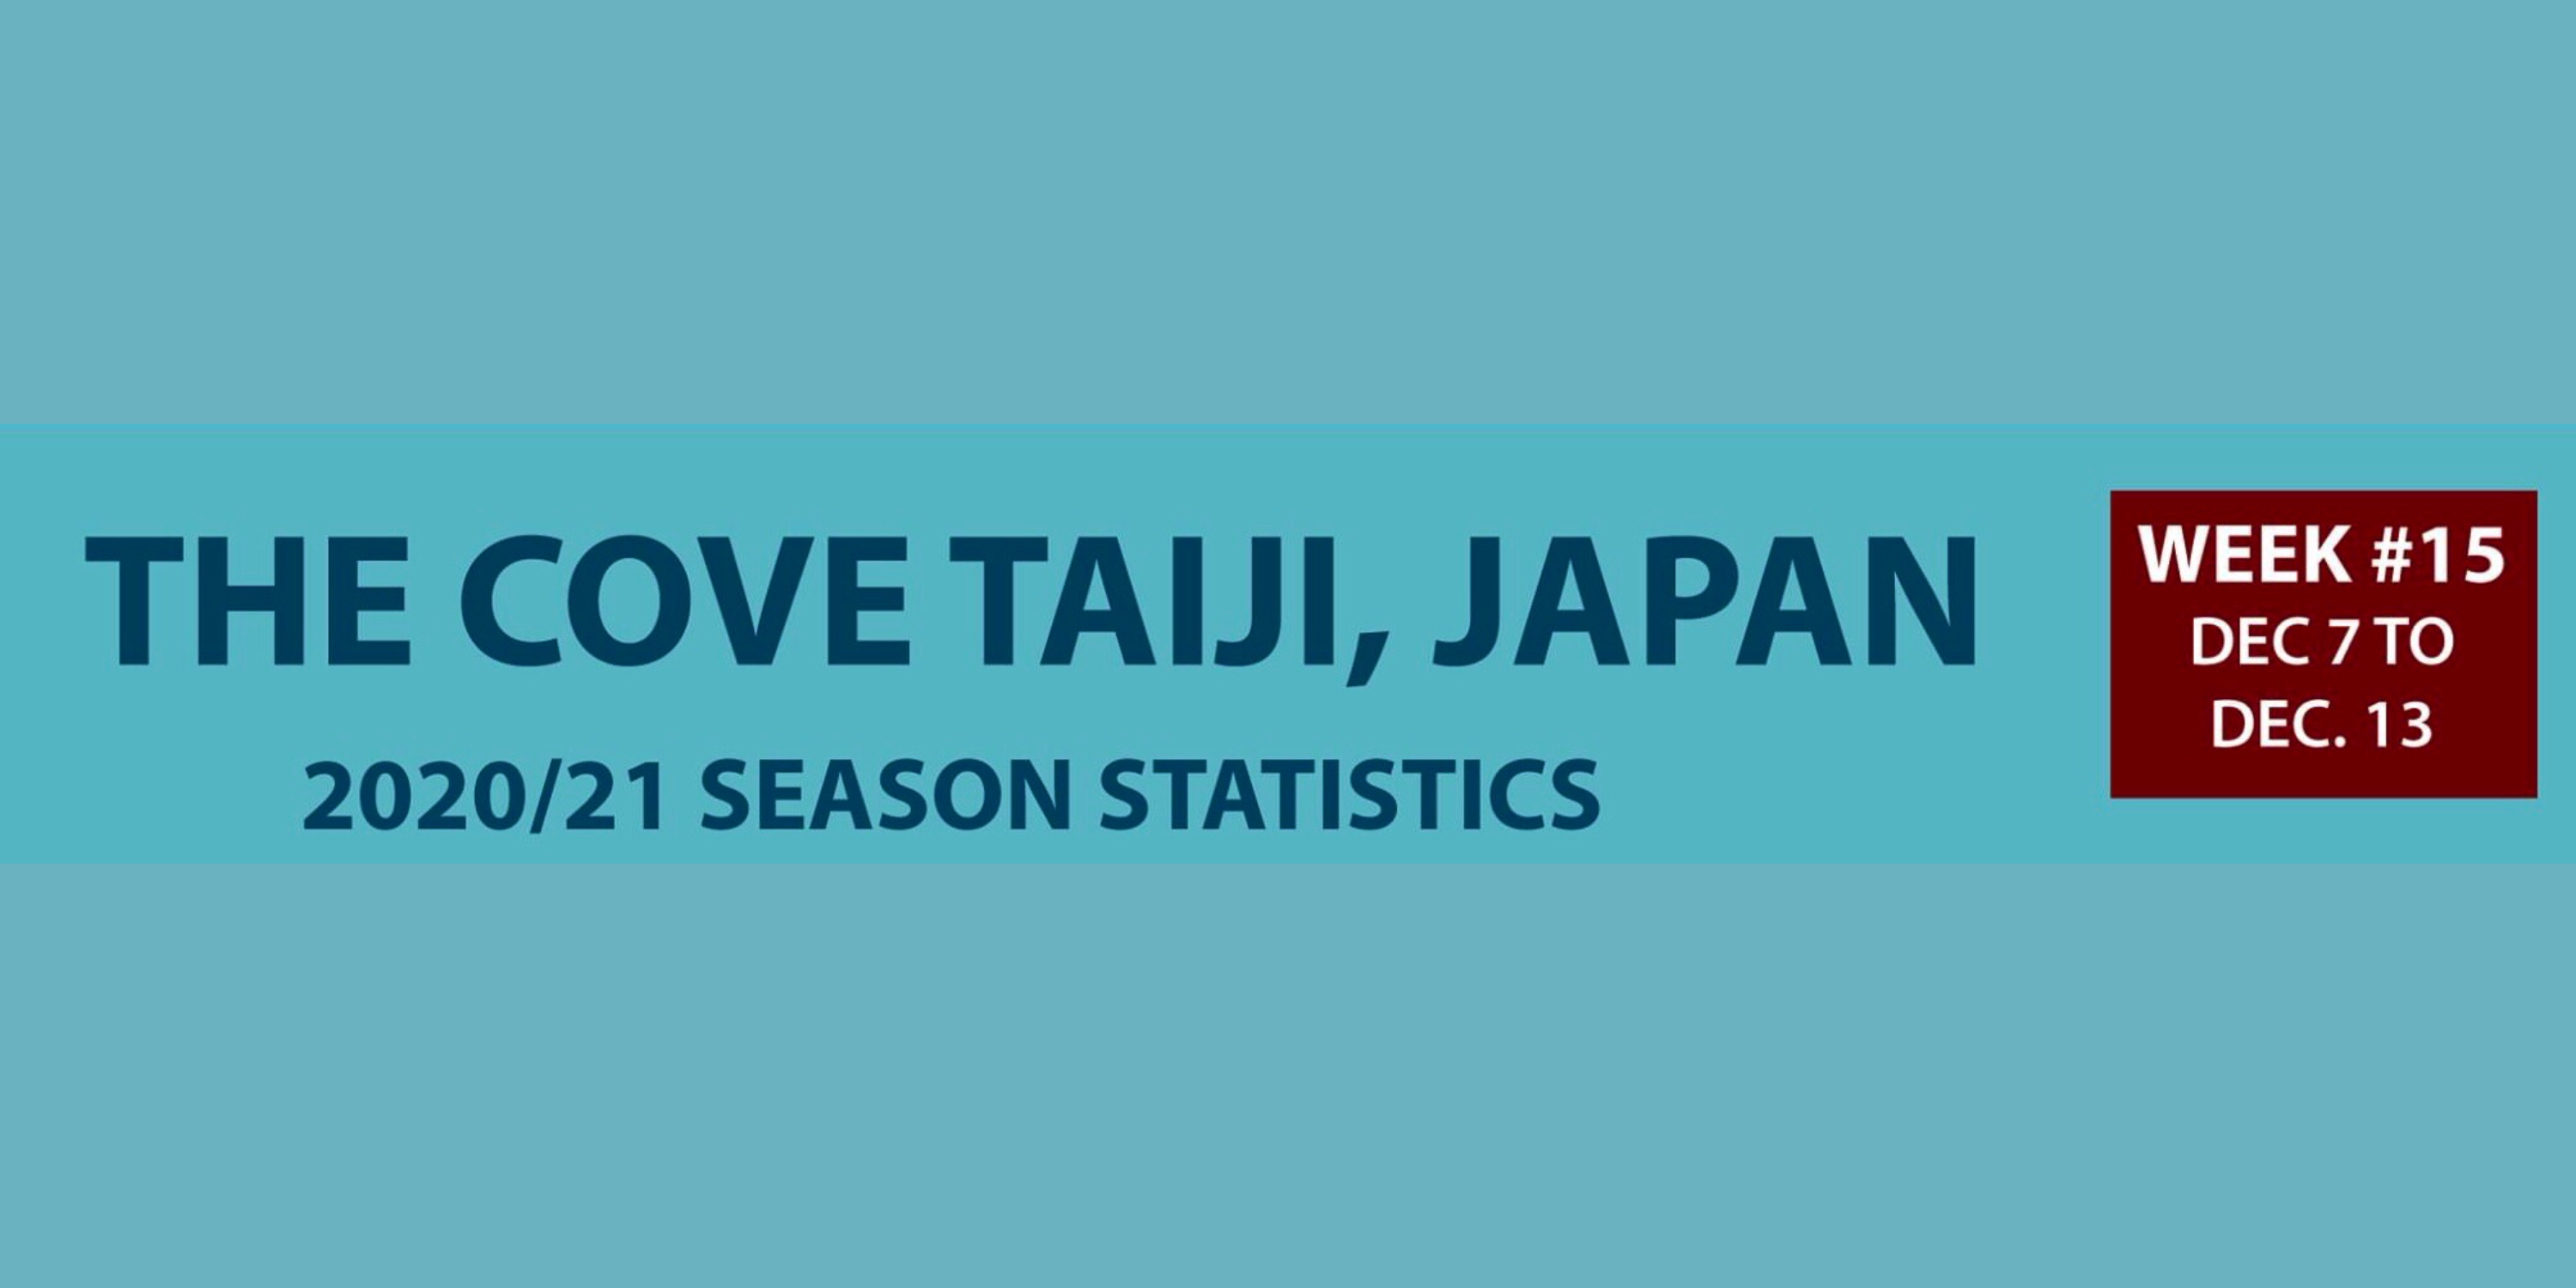 Chasse au dauphin à Taïji (Japon) – Bilan semaine du 7 au 13 décembre 2020 #15